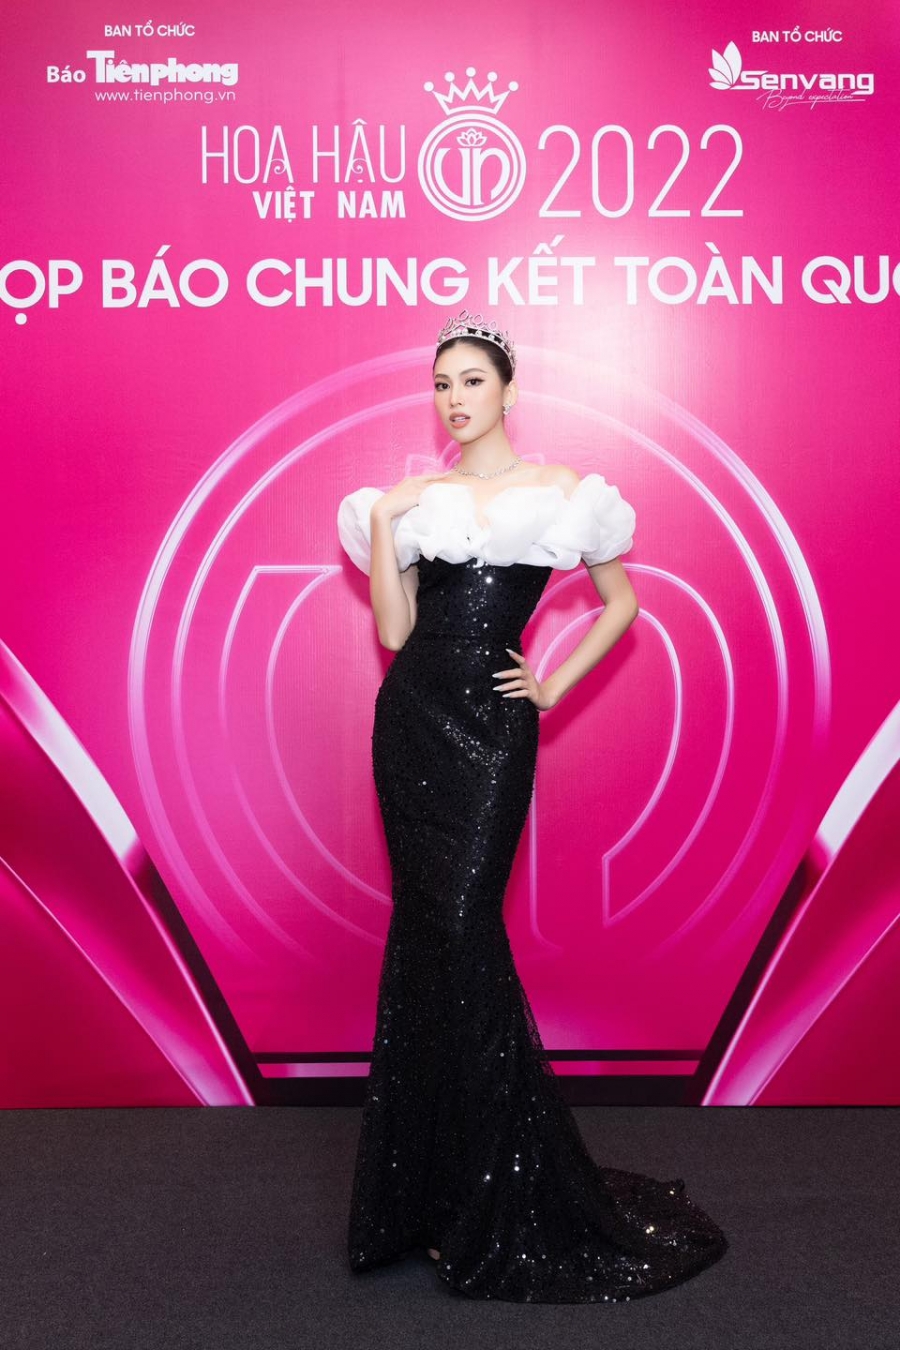 Đọ dáng cùng dàn người đẹp, đương kim Hoa hậu Việt Nam Đỗ Thị Hà vẫn bị Tiểu Vy chiếm spotlight? - Ảnh 7